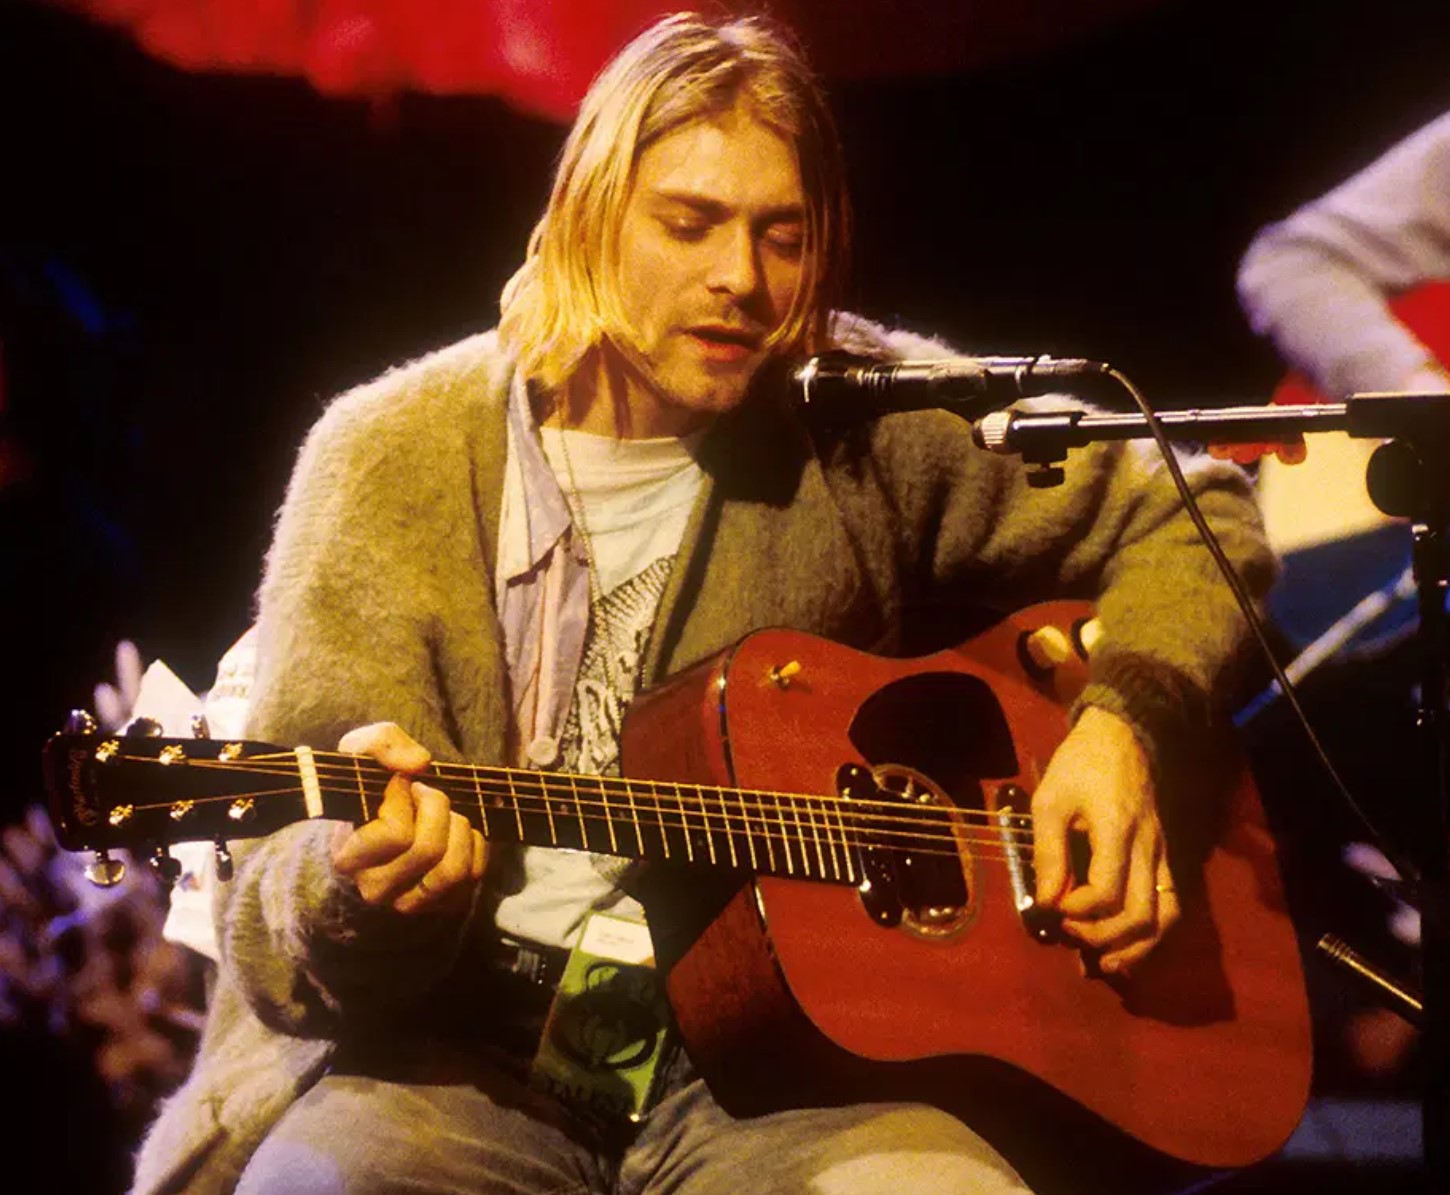 Avec Quel Guitariste Kurt Cobain Etait Il Dans La Photo Originale Quel Guitariste Kurt Cobain était-il Dans La Photo Originale | AUTOMASITES